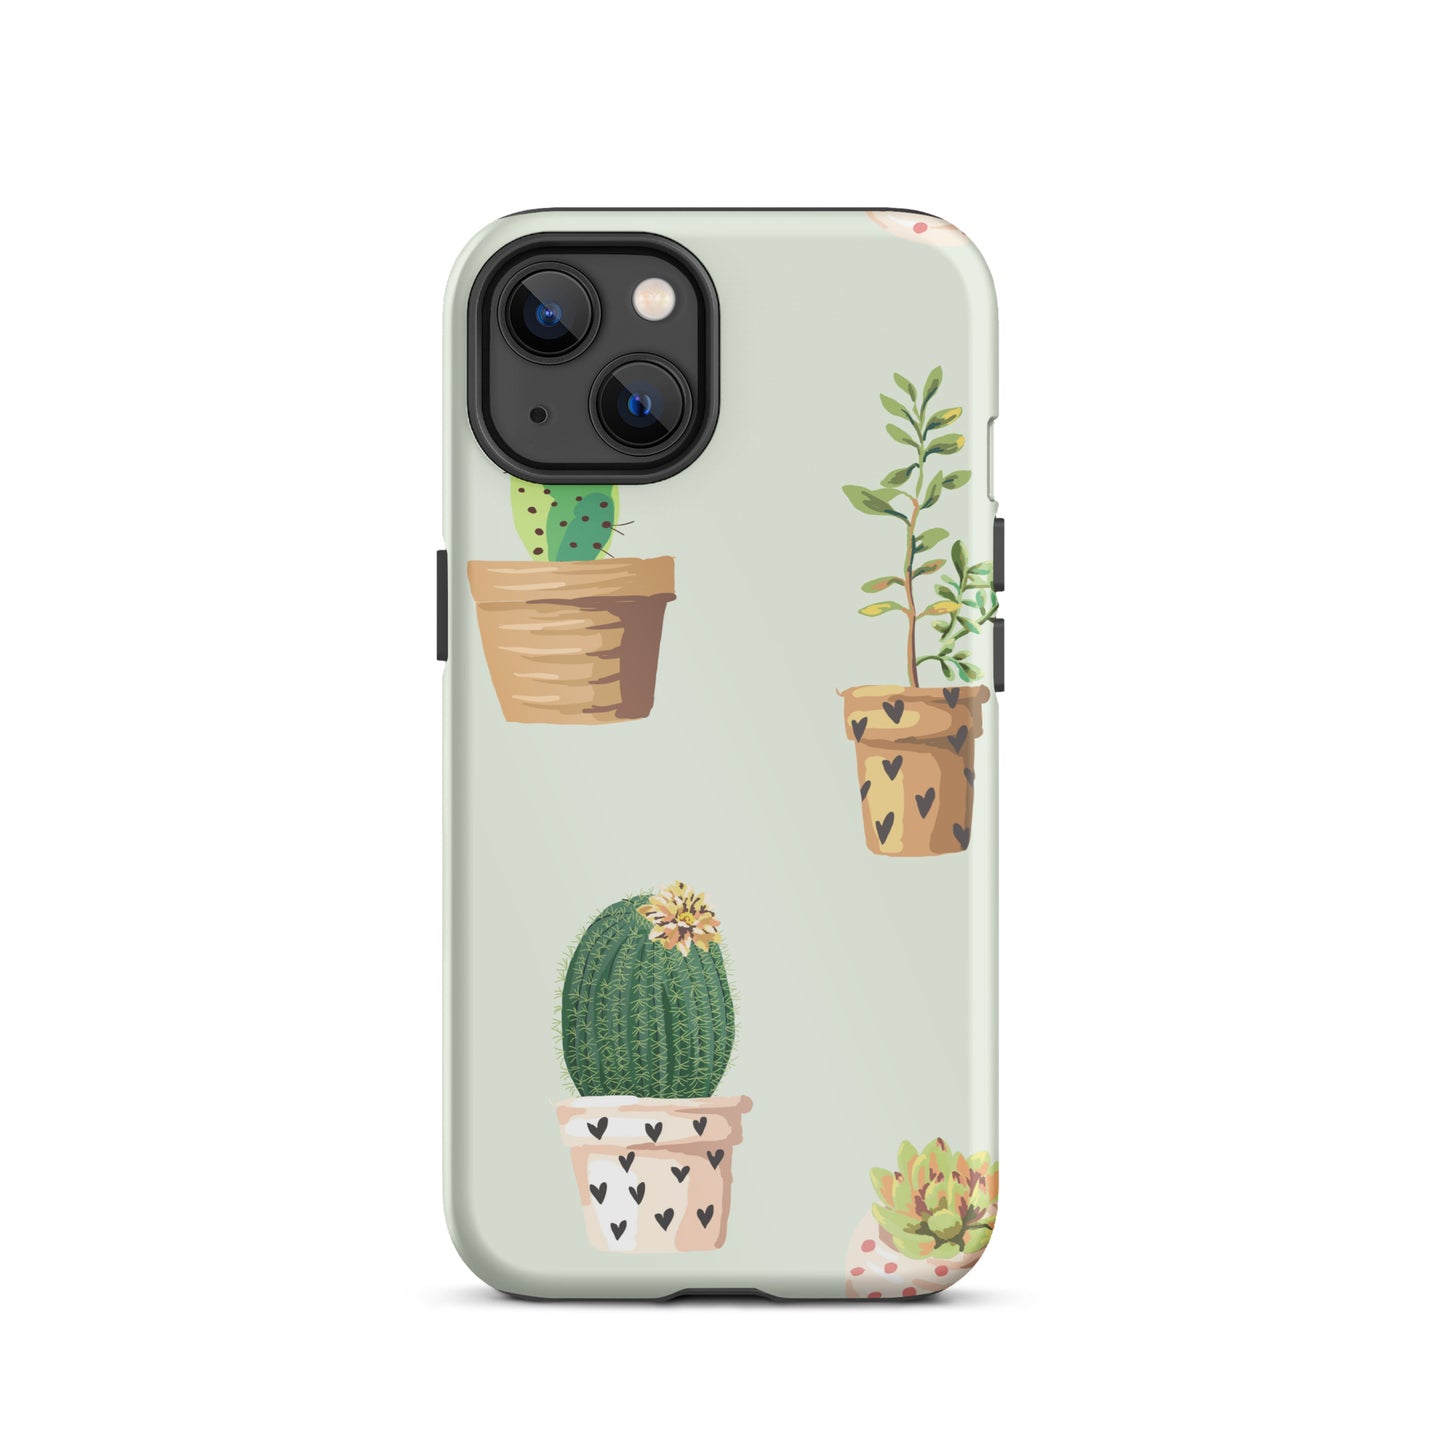 Cactus iPhone case